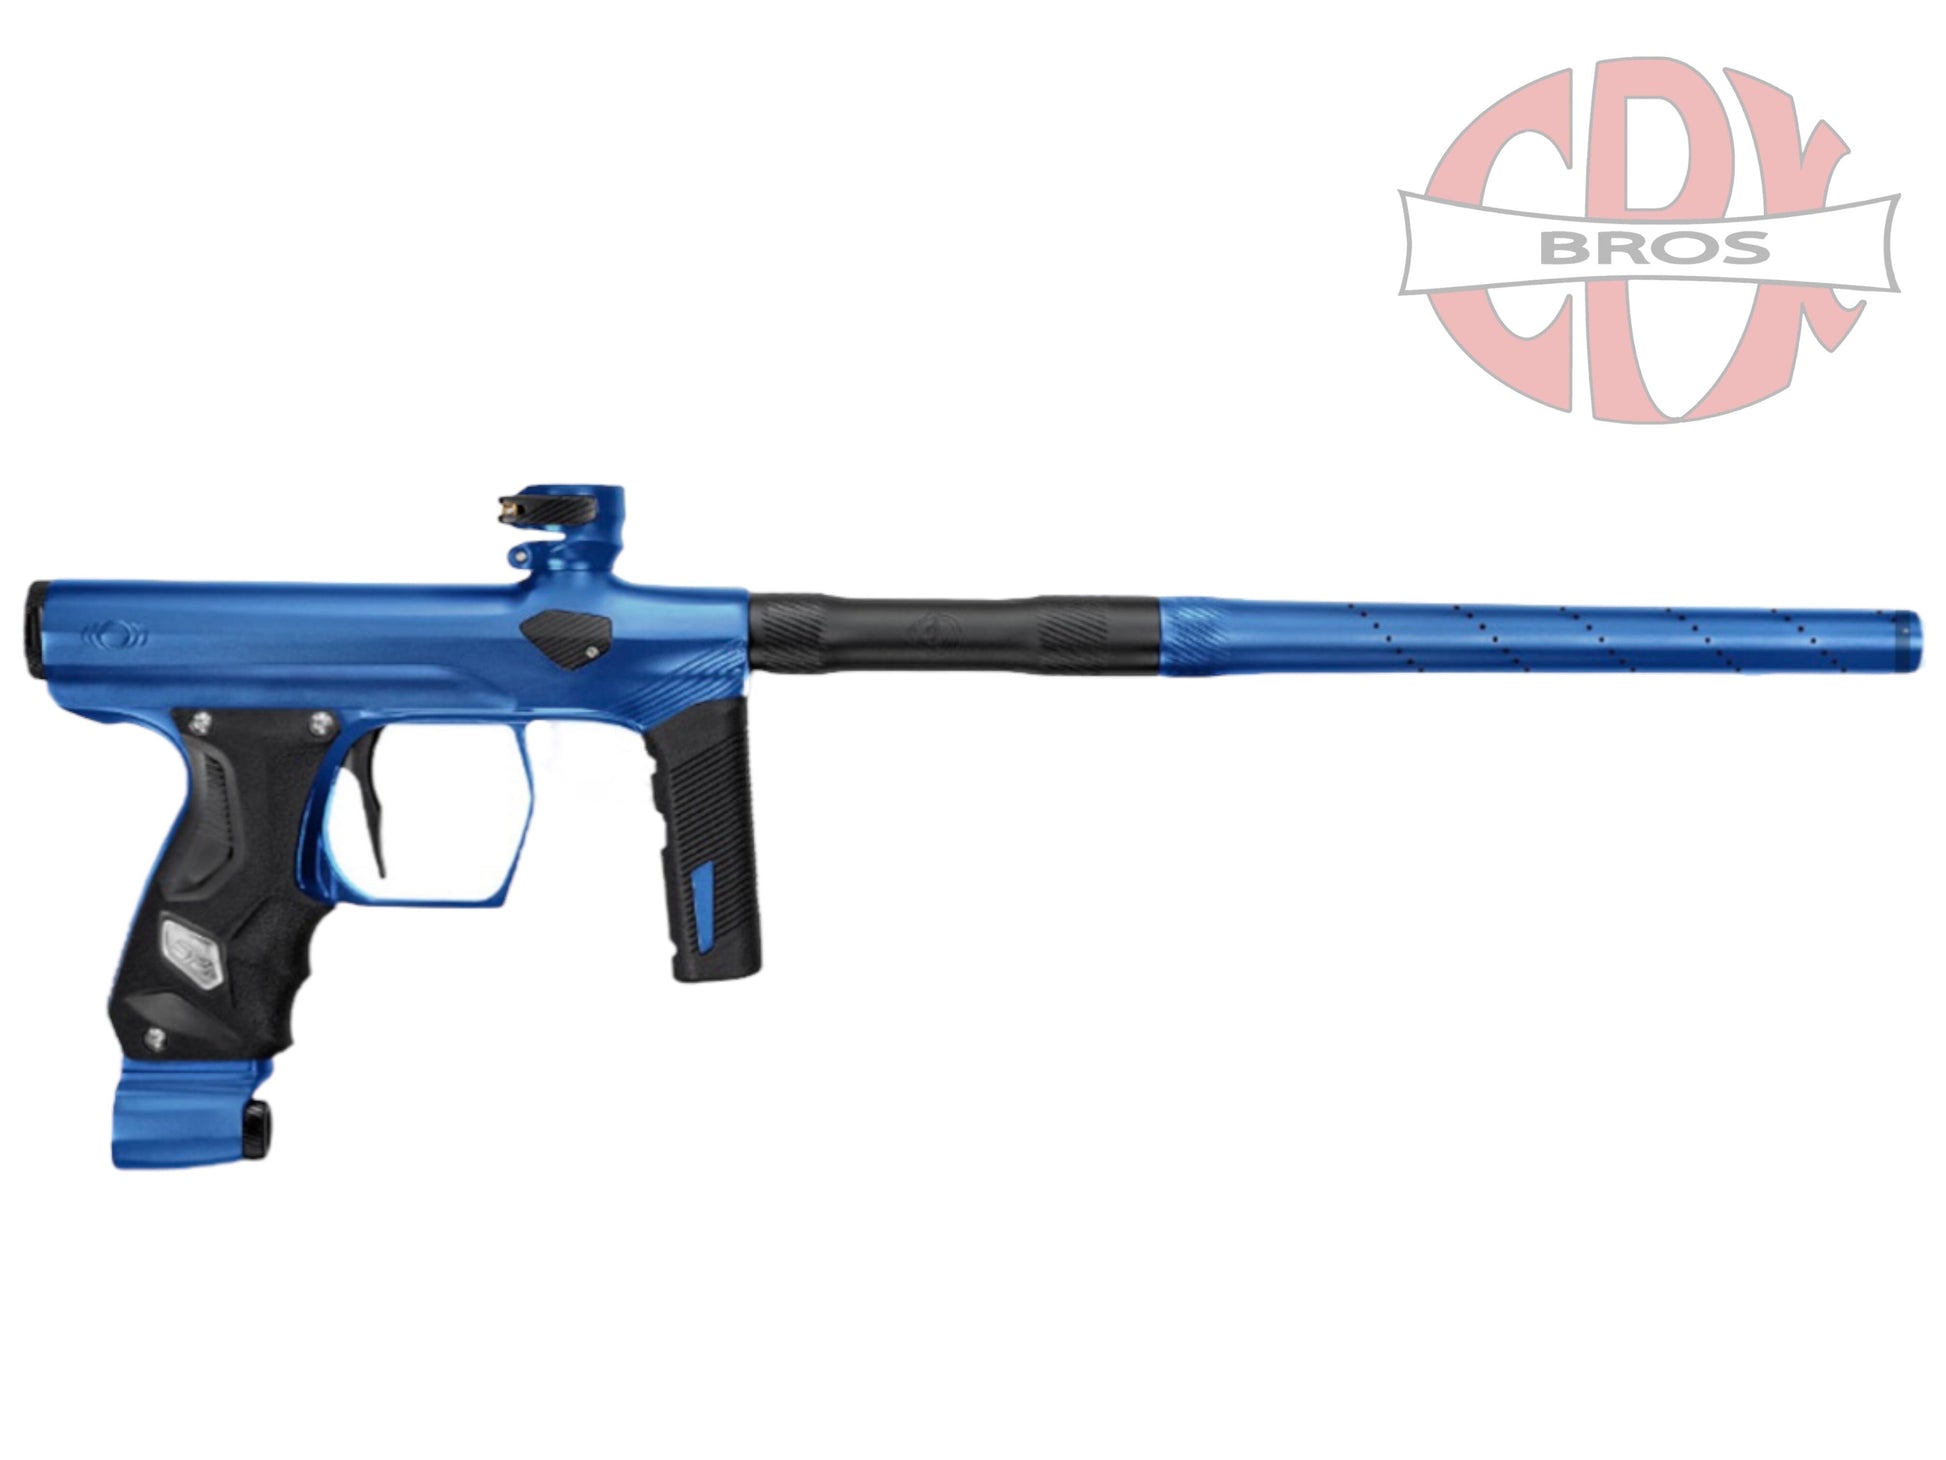 Used NEW SP Shocker ERA Paintball Gun - Matte Blue Paintball Gun from CPXBrosPaintball Buy/Sell/Trade Paintball Markers, Paintball Hoppers, Paintball Masks, and Hormesis Headbands